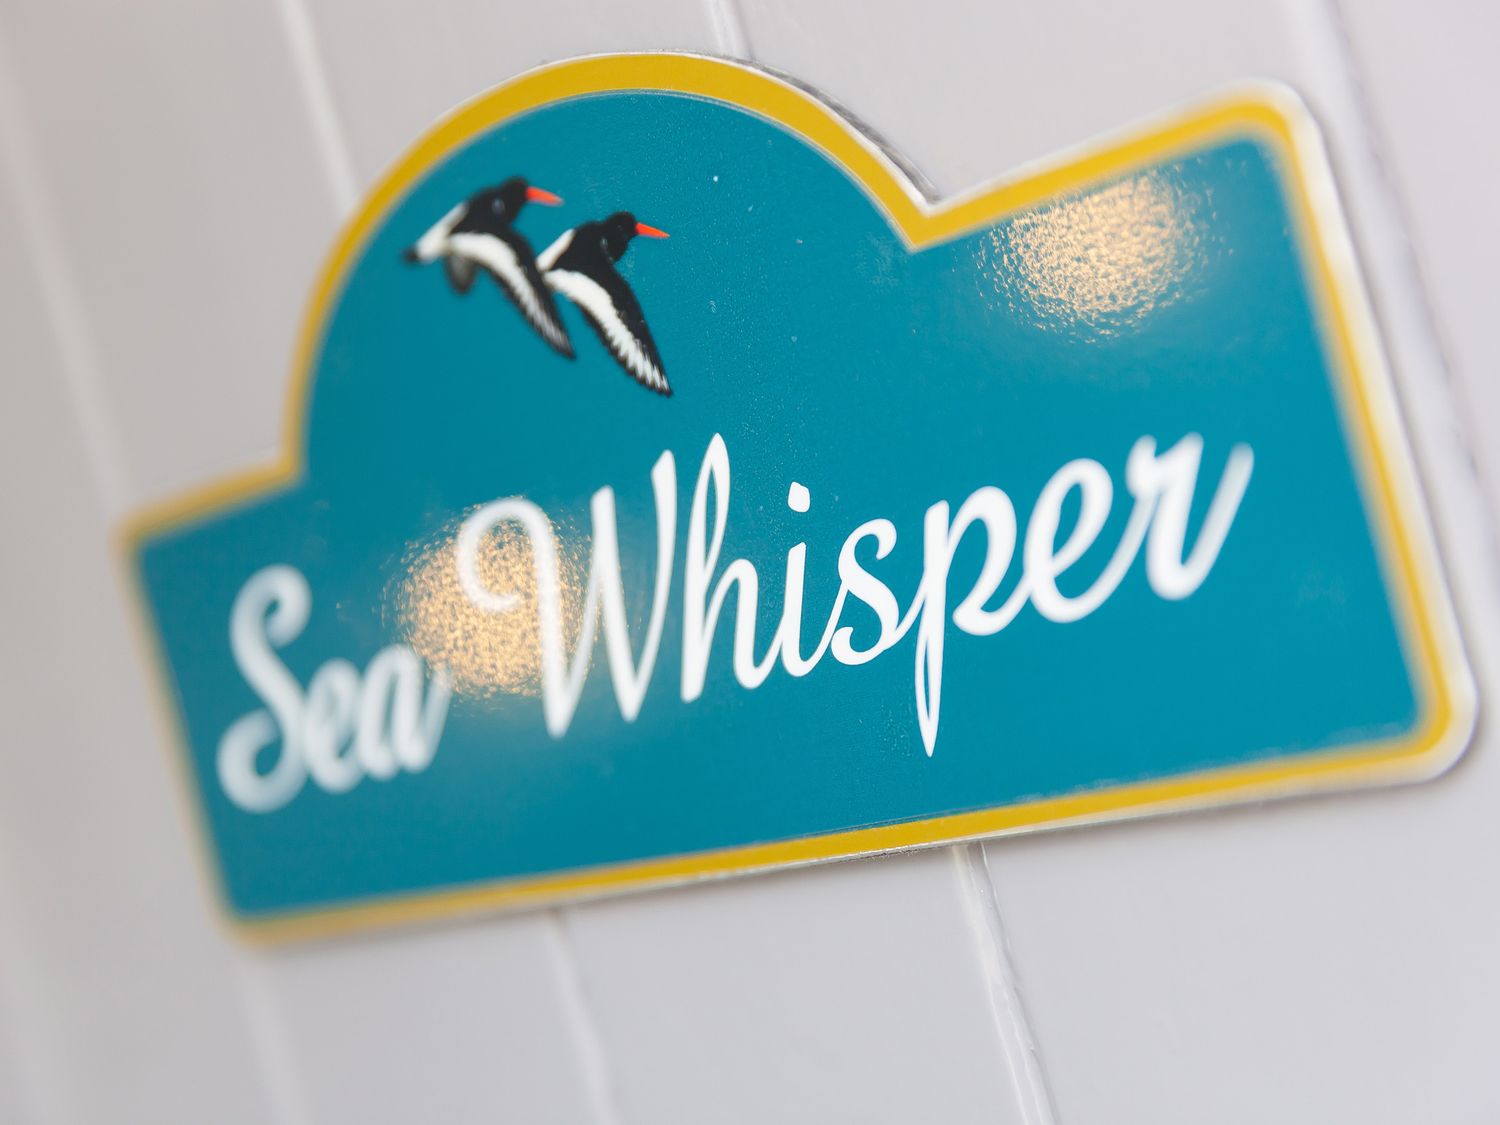 Sea Whisper, Portreath